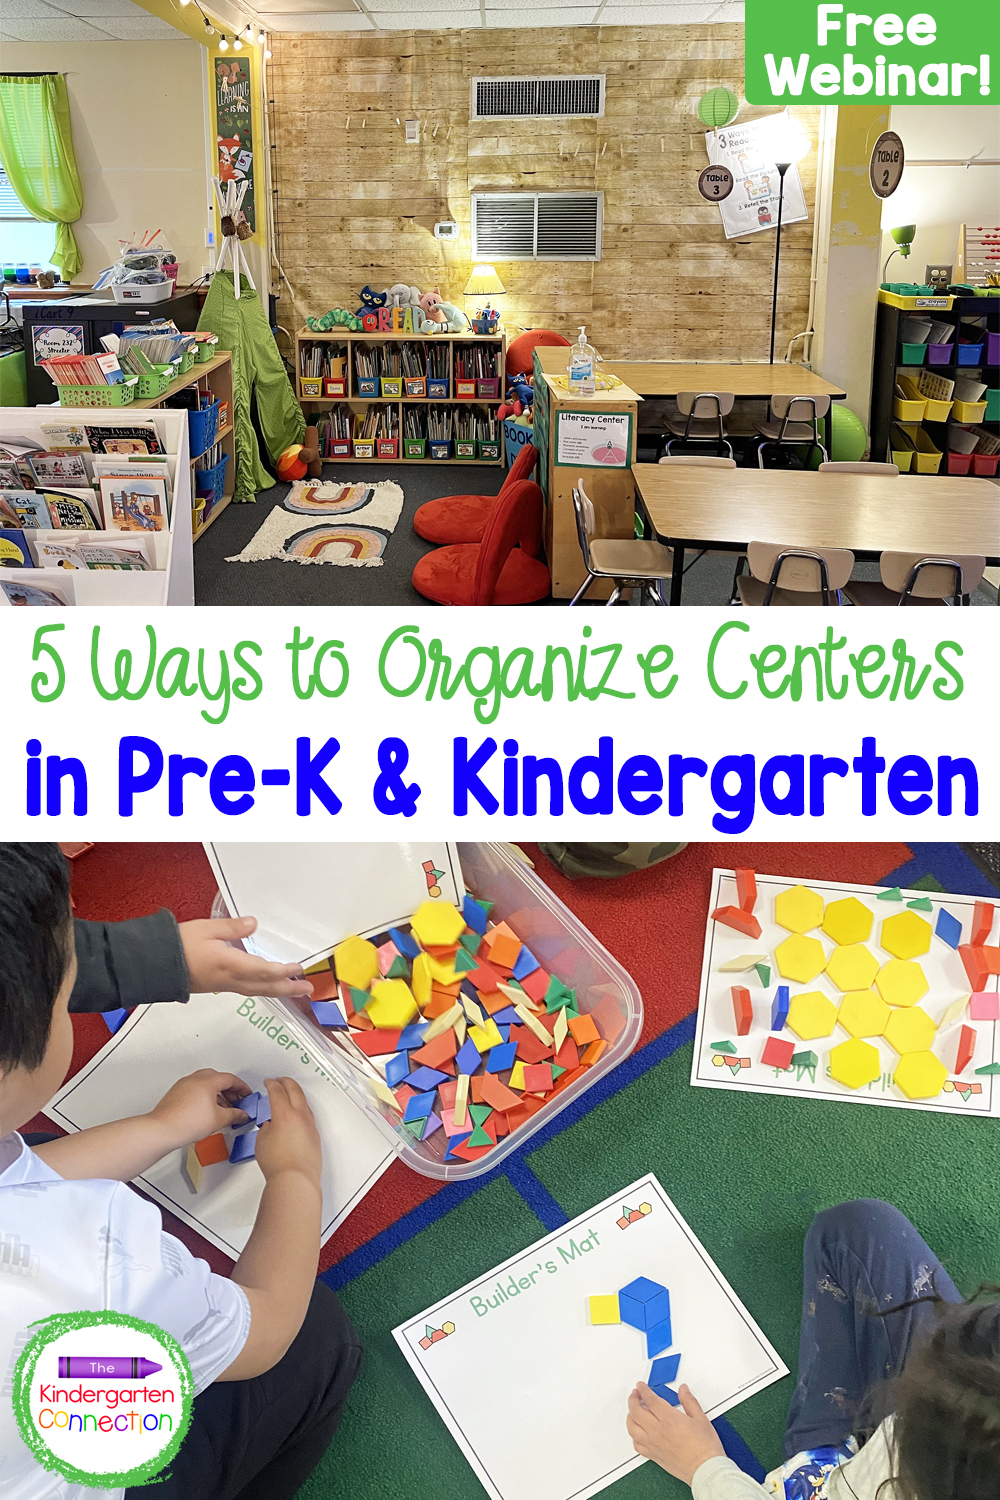 How to Organize Classroom Centers in Pre-K & Kindergarten